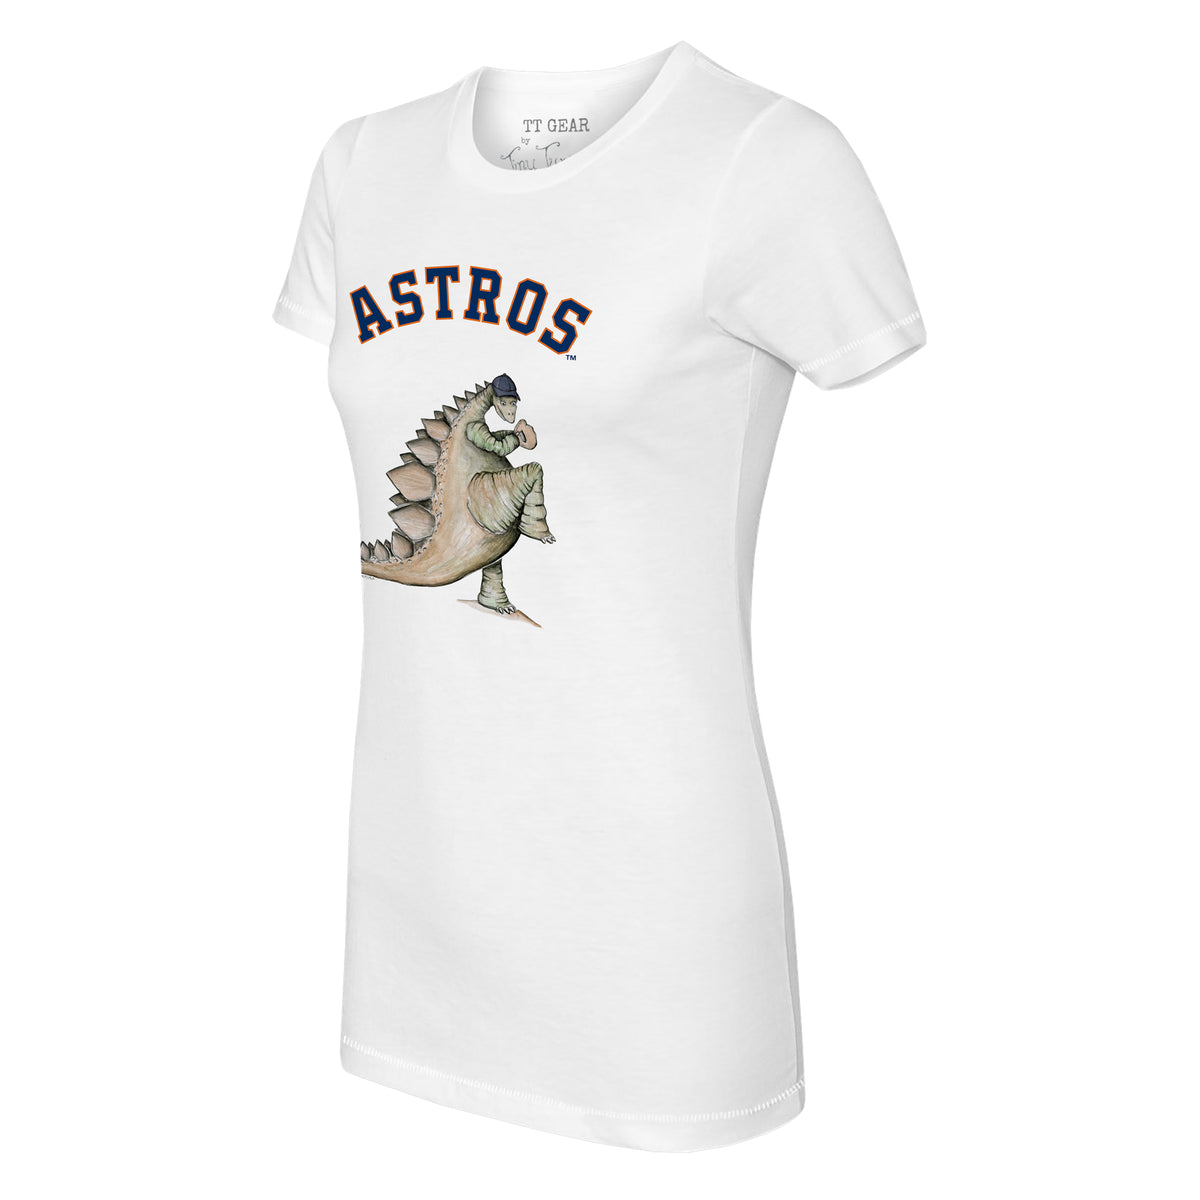 Houston Astros Kate the Catcher Tee Shirt